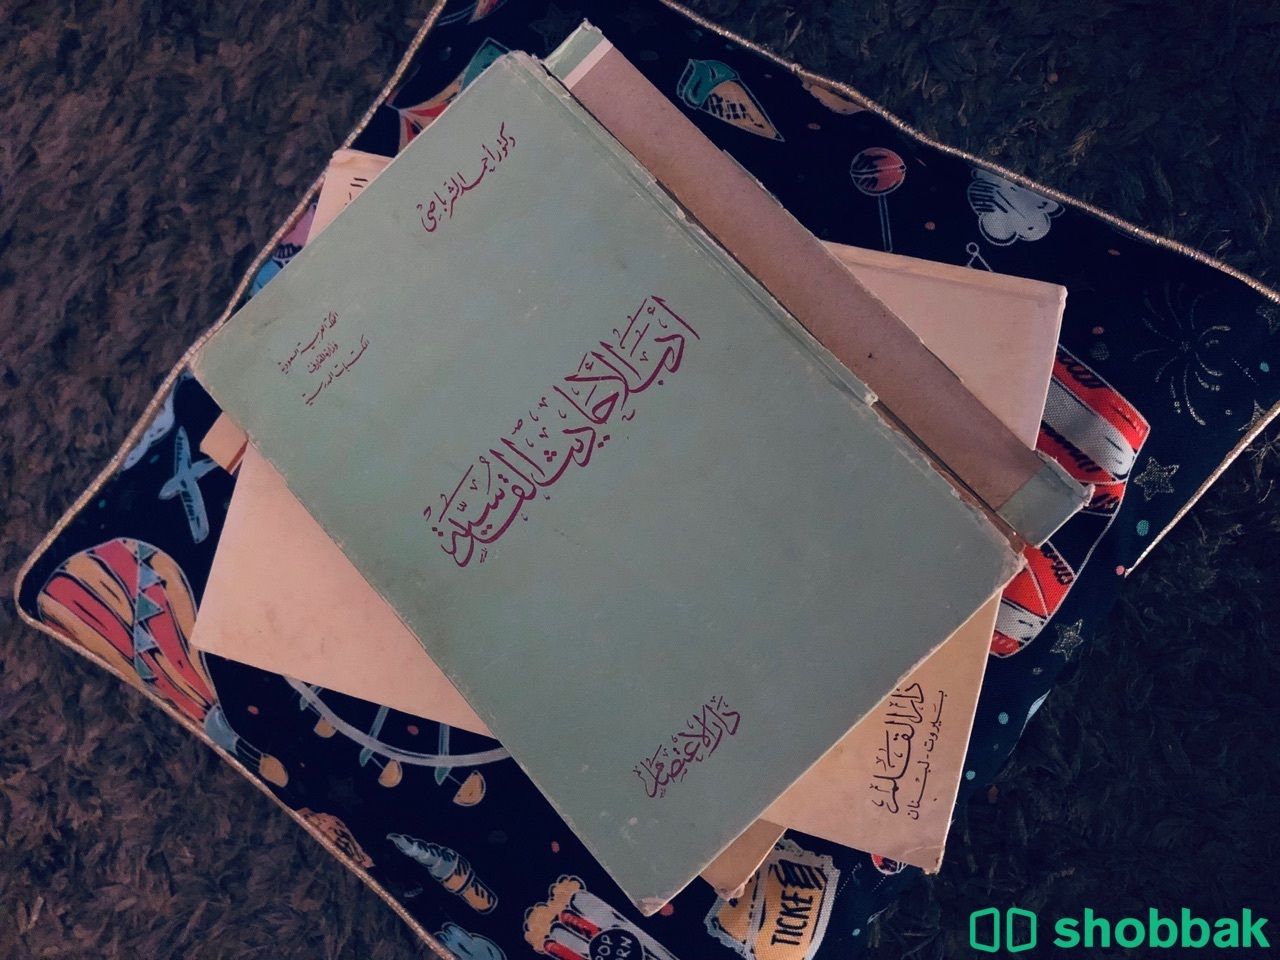 مجموعة كتب نادرة وقديمة للبيع شباك السعودية